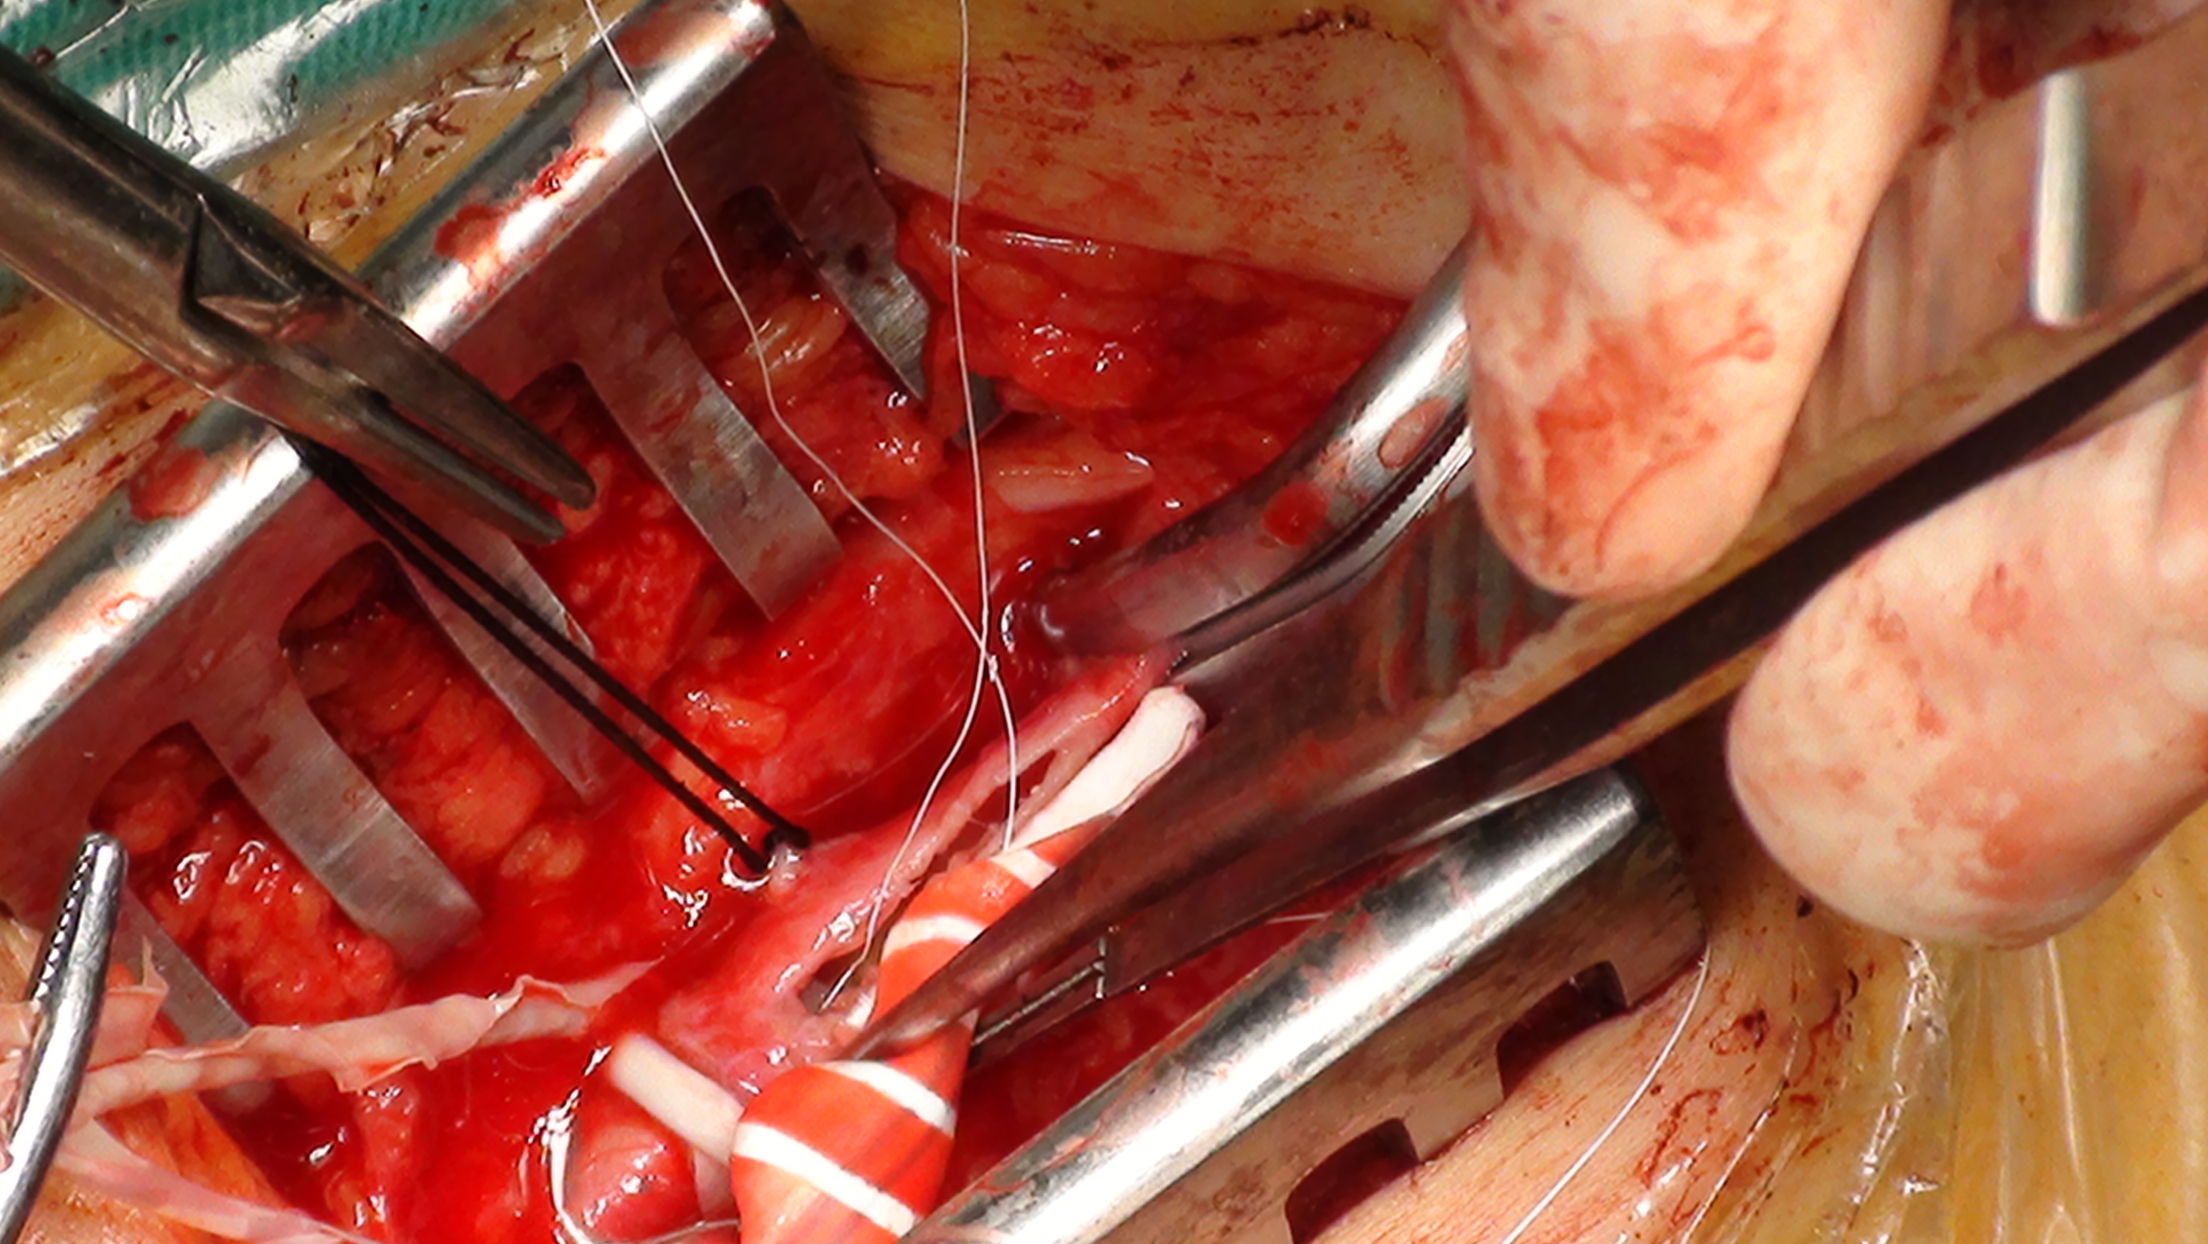 股动脉支架取出并股腘动脉人工血管转流手术治疗股动脉血管成形术后再